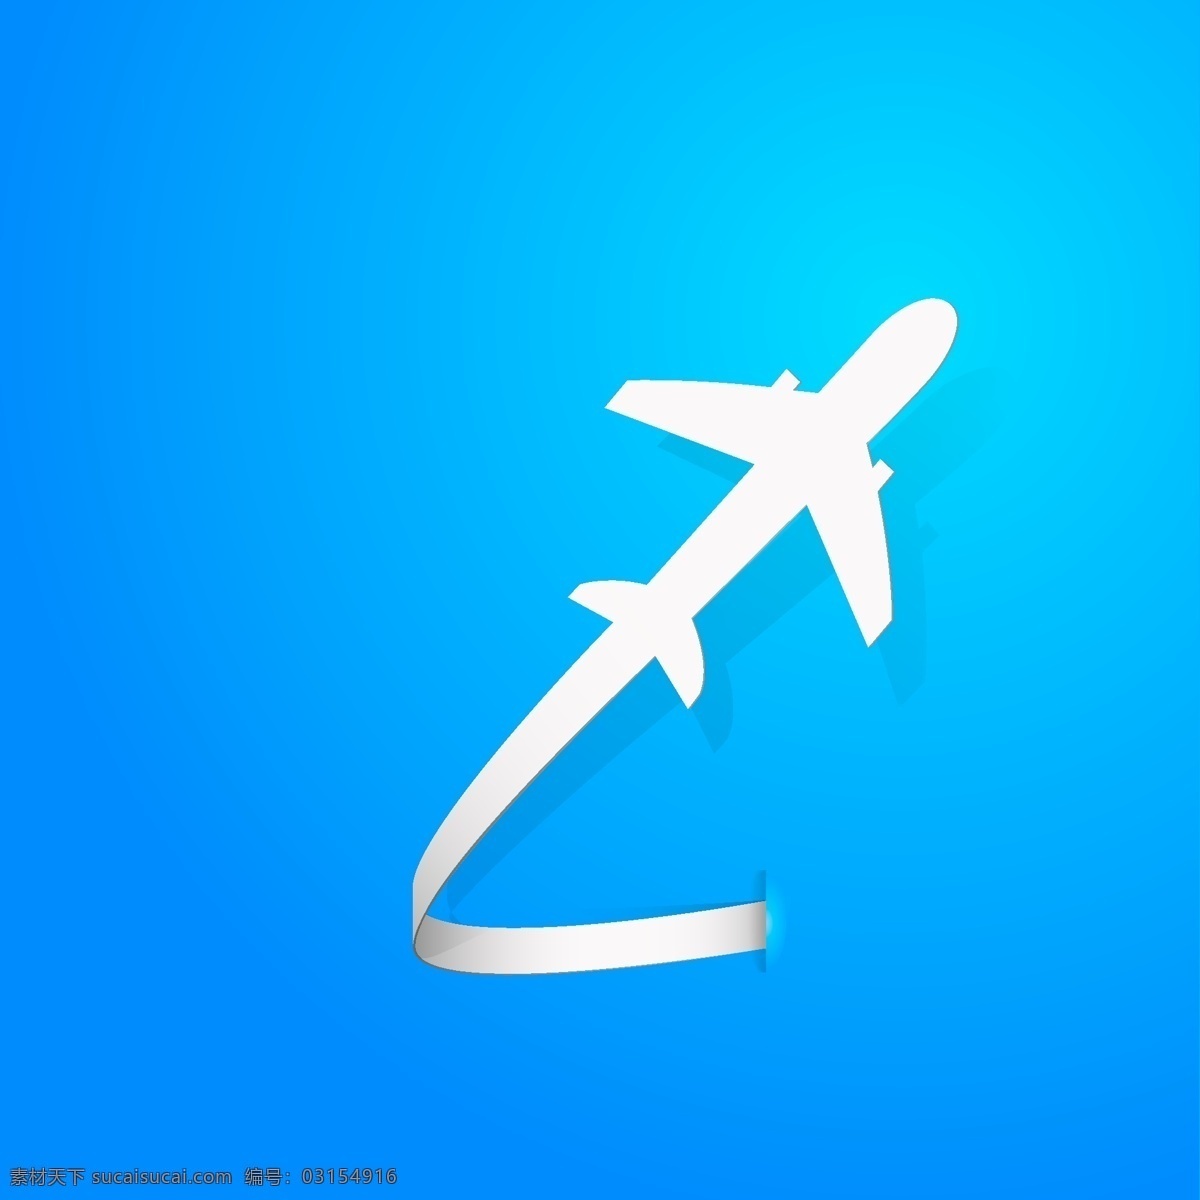 飞行 飞机 剪影 logo 模板 抽象 蓝色背景 logo模板